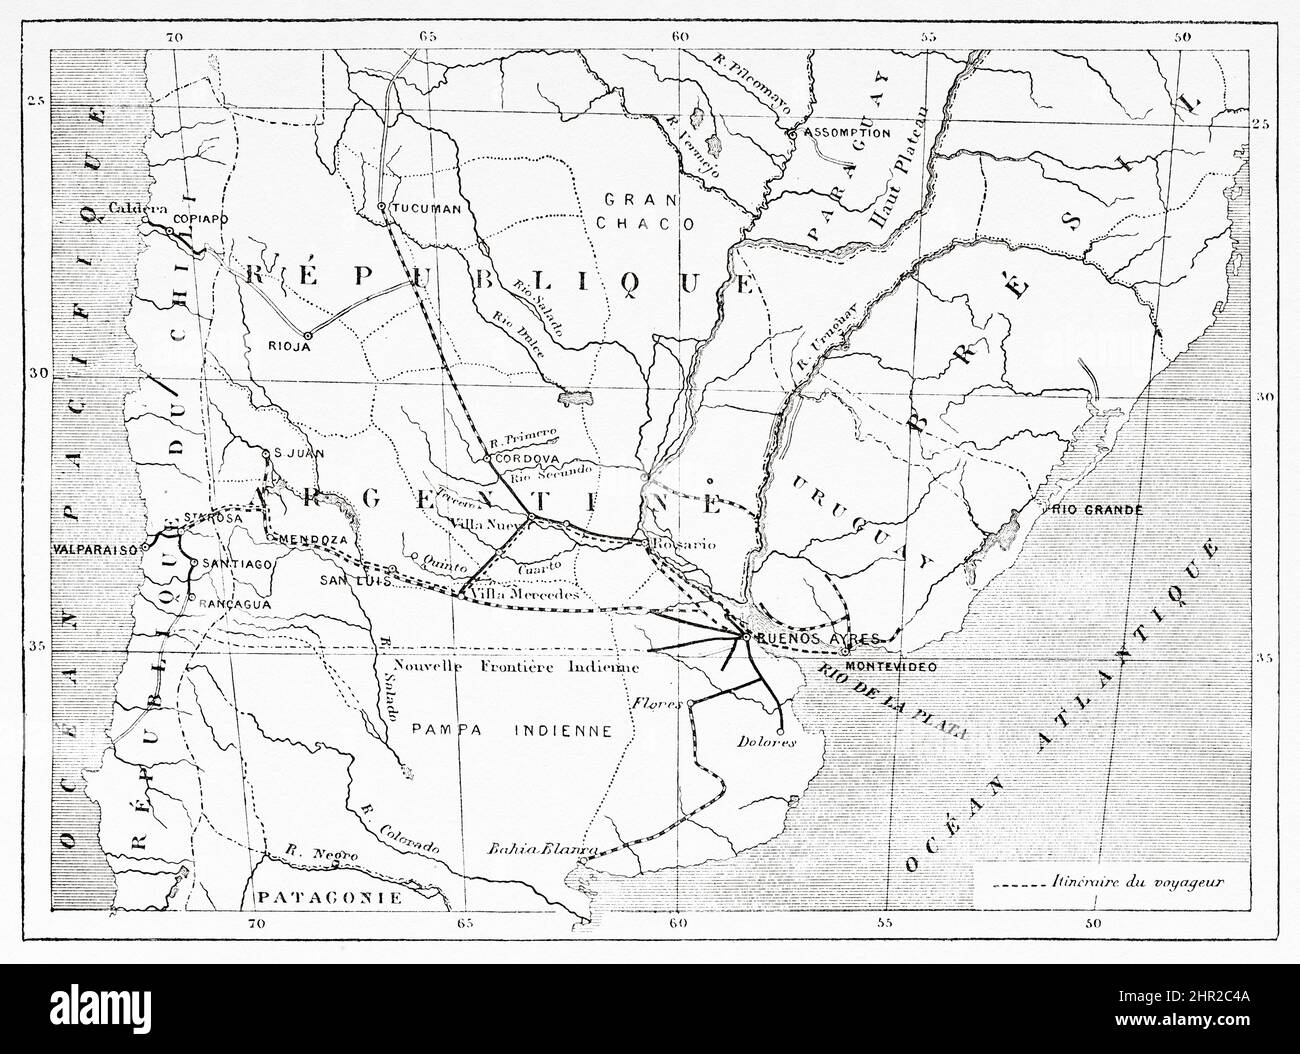 Karte der Reise von Montevideo in Uruguay nach Santa Rosa in Chile von Desiré Charnay im Jahr 1876. Südamerika. Durch die Pampas und die Cordillera, von Montevideo nach Santa Rosa (Chile) von Desiré Charnay, 1876 Stockfoto